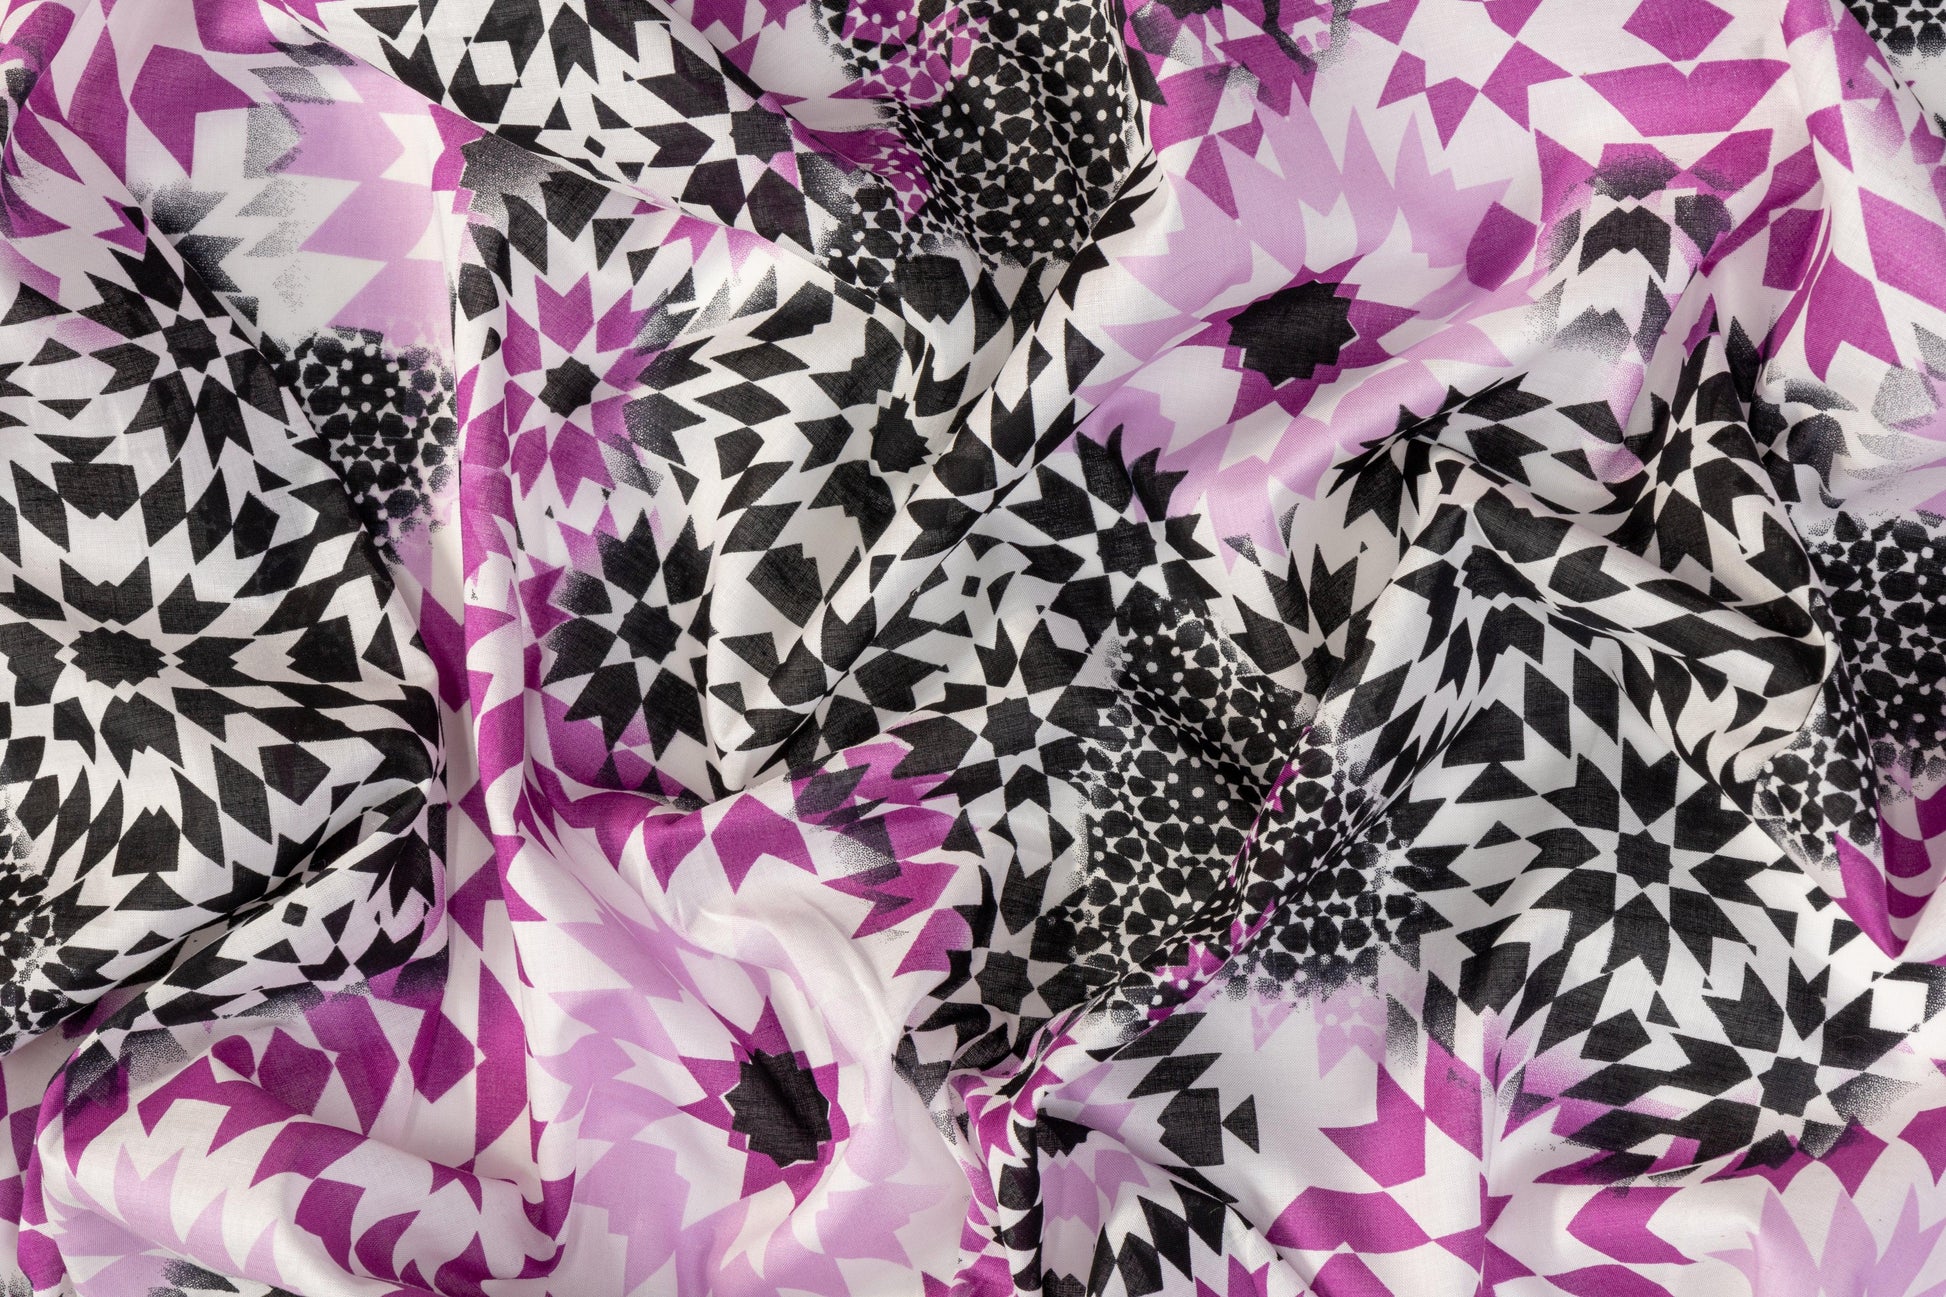 Kaleidoscope Printed Cotton Voile - Magenta, Black, White - Prime Fabrics